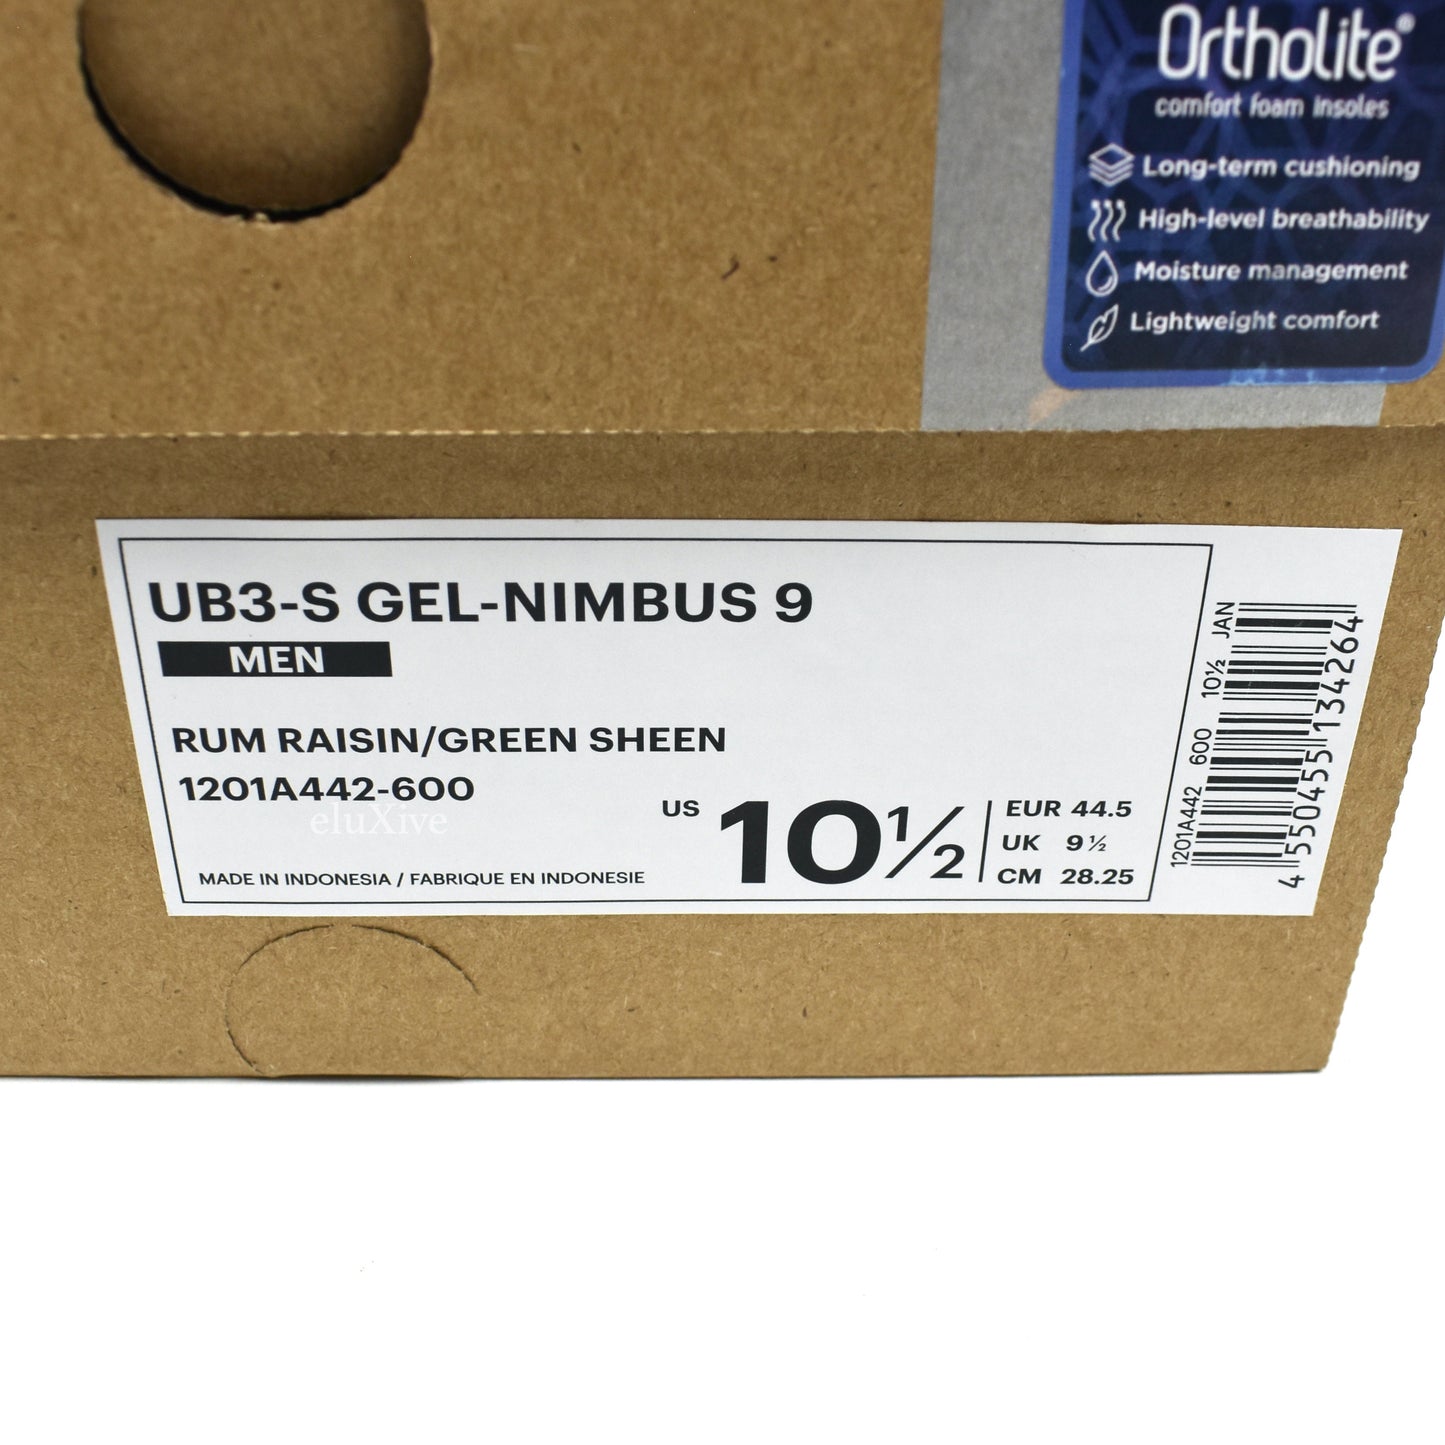 Asics x Kiko Kostadinov - UB3-S Gel Nimbus 9 'UPS'  (Run Raisin/Green)